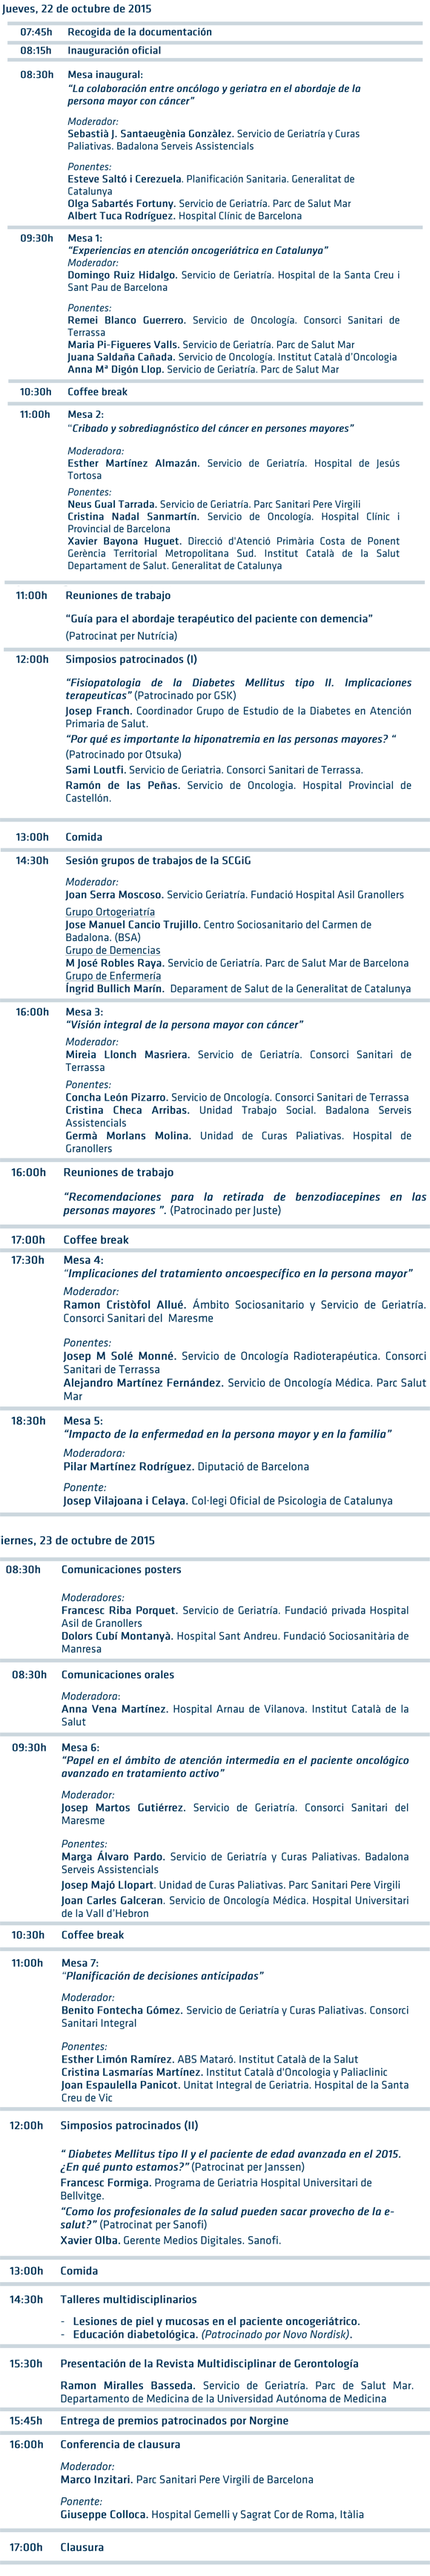 geriatricarea programa Congreso de la Sociedad Catalana de Geriatría y Gerontología